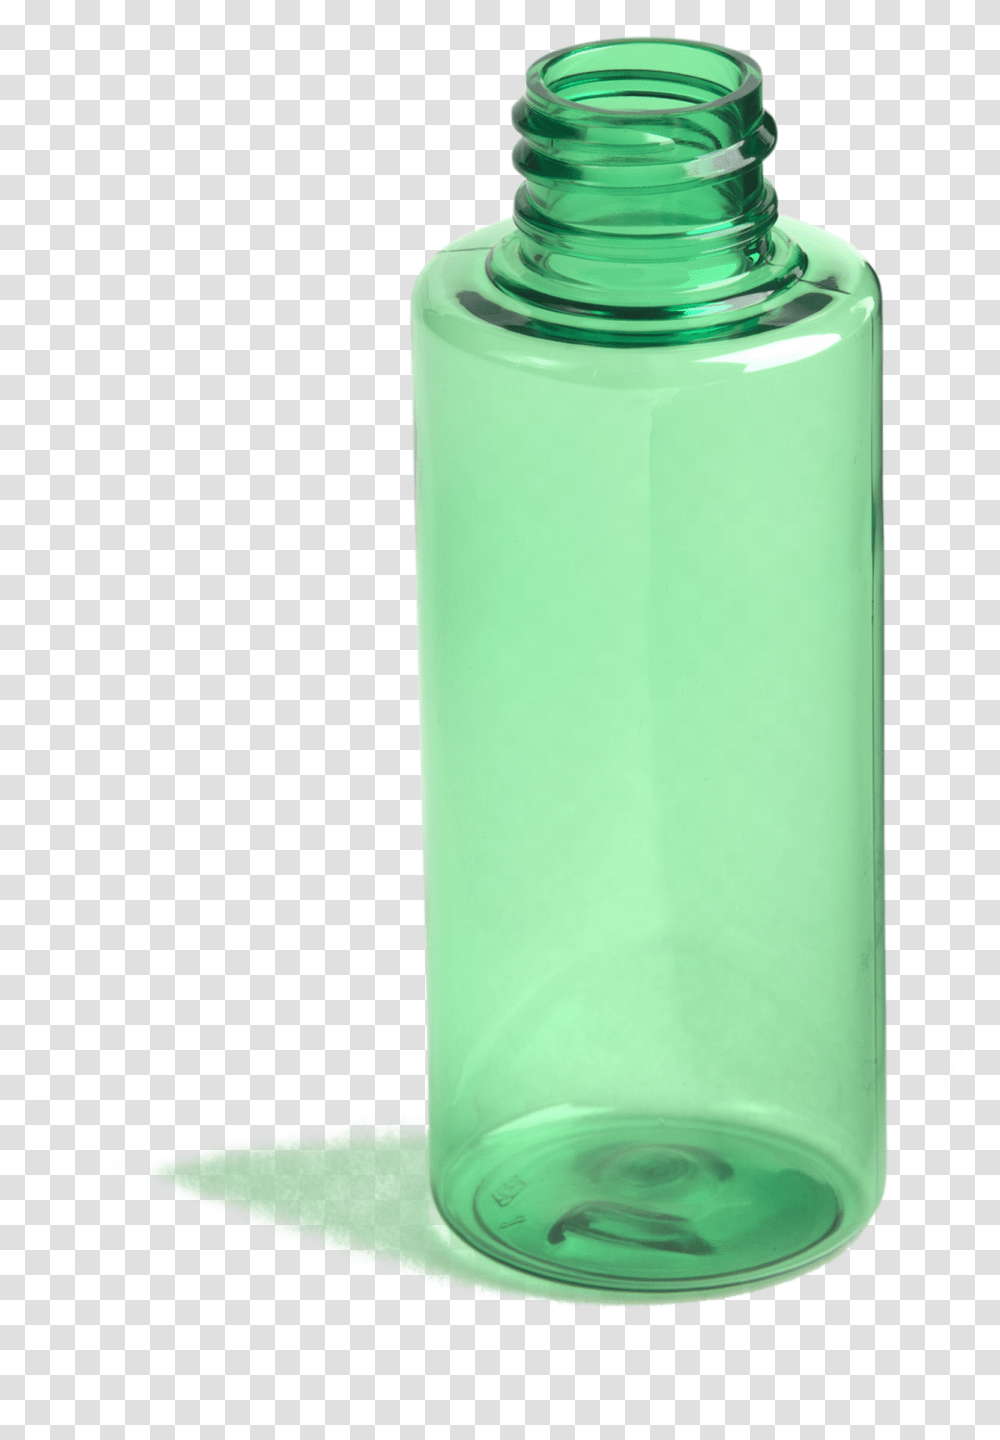 Glass Bottle Image Cylinder, Shaker, Water Bottle, Milk, Beverage Transparent Png